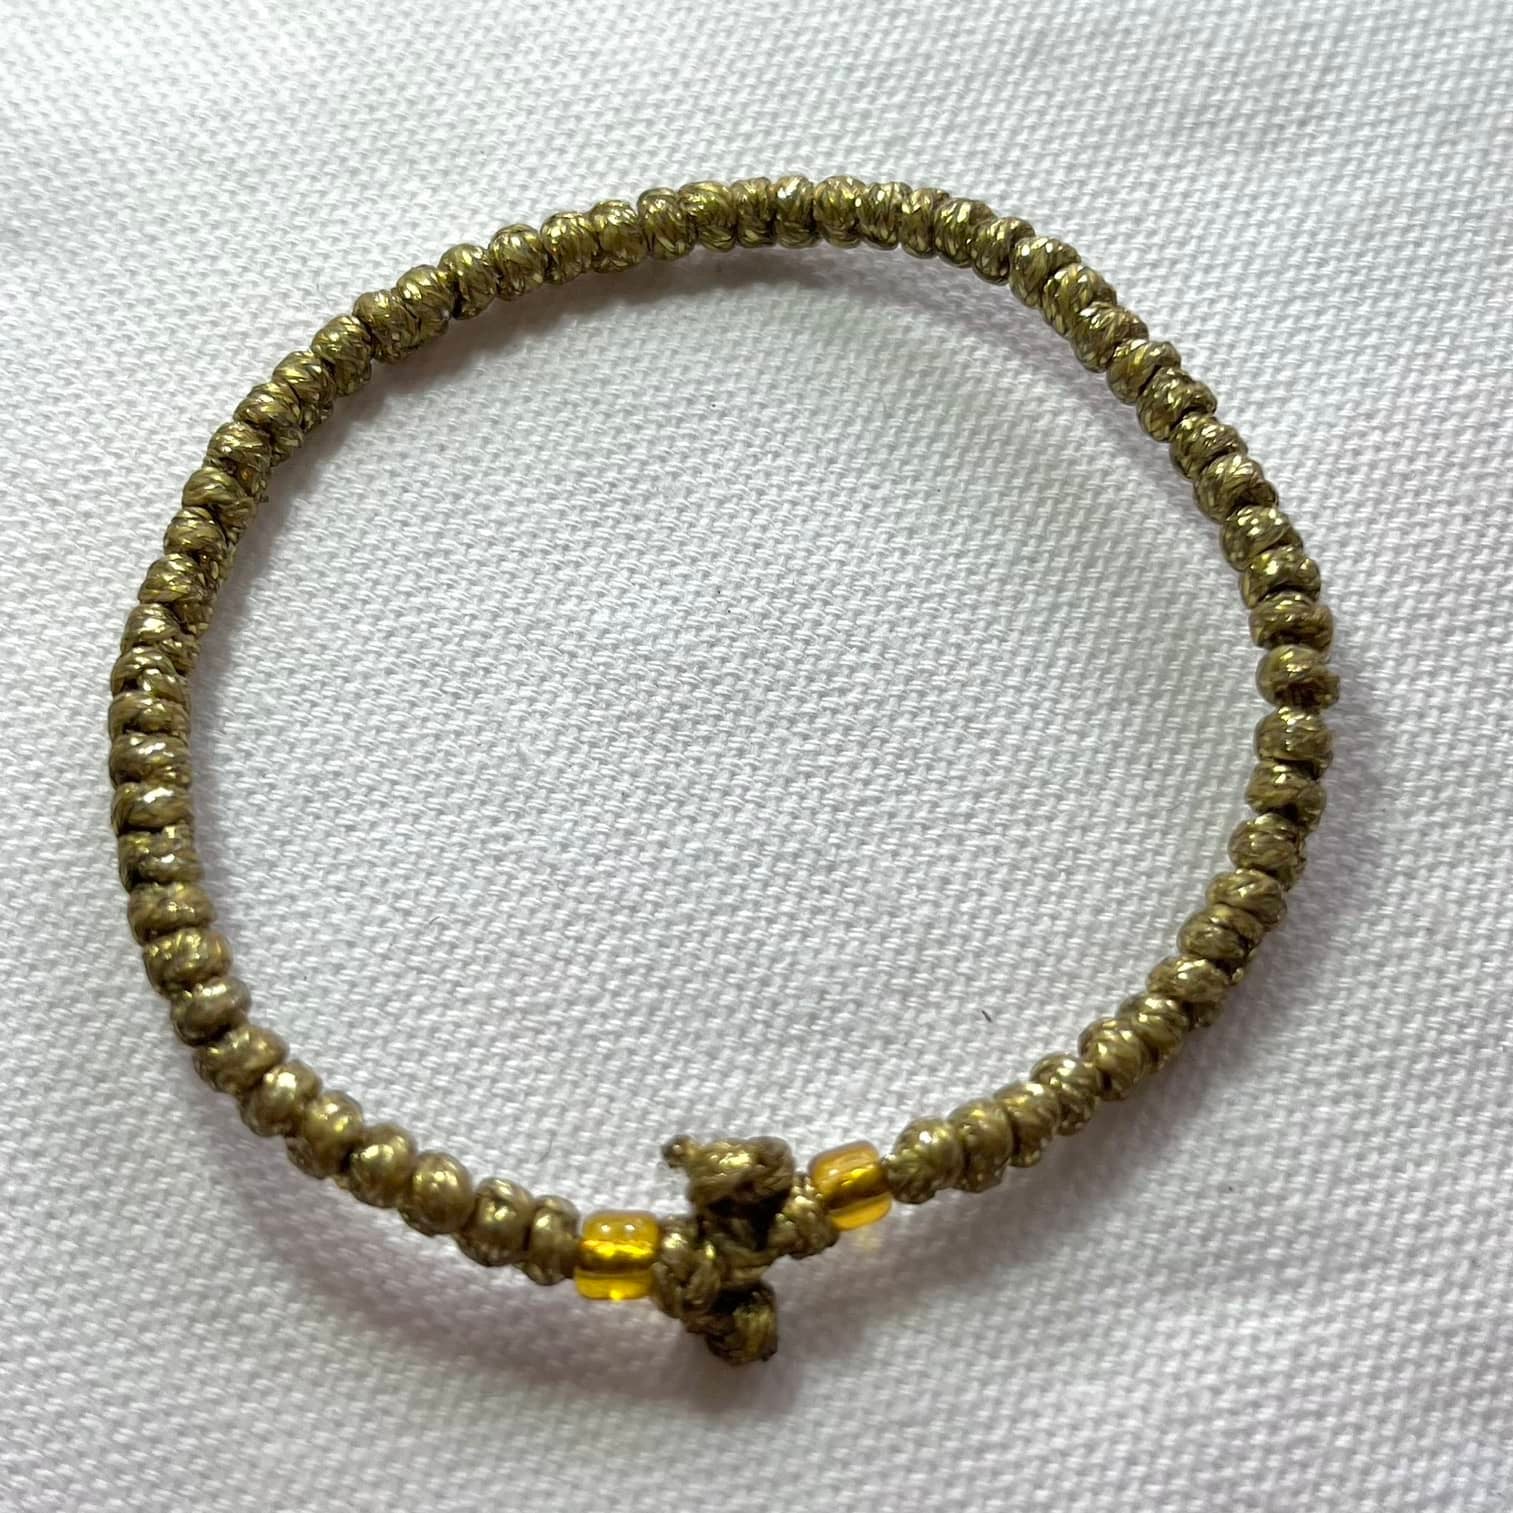 Komboskini Gold Bracelet - Lithos Crystals